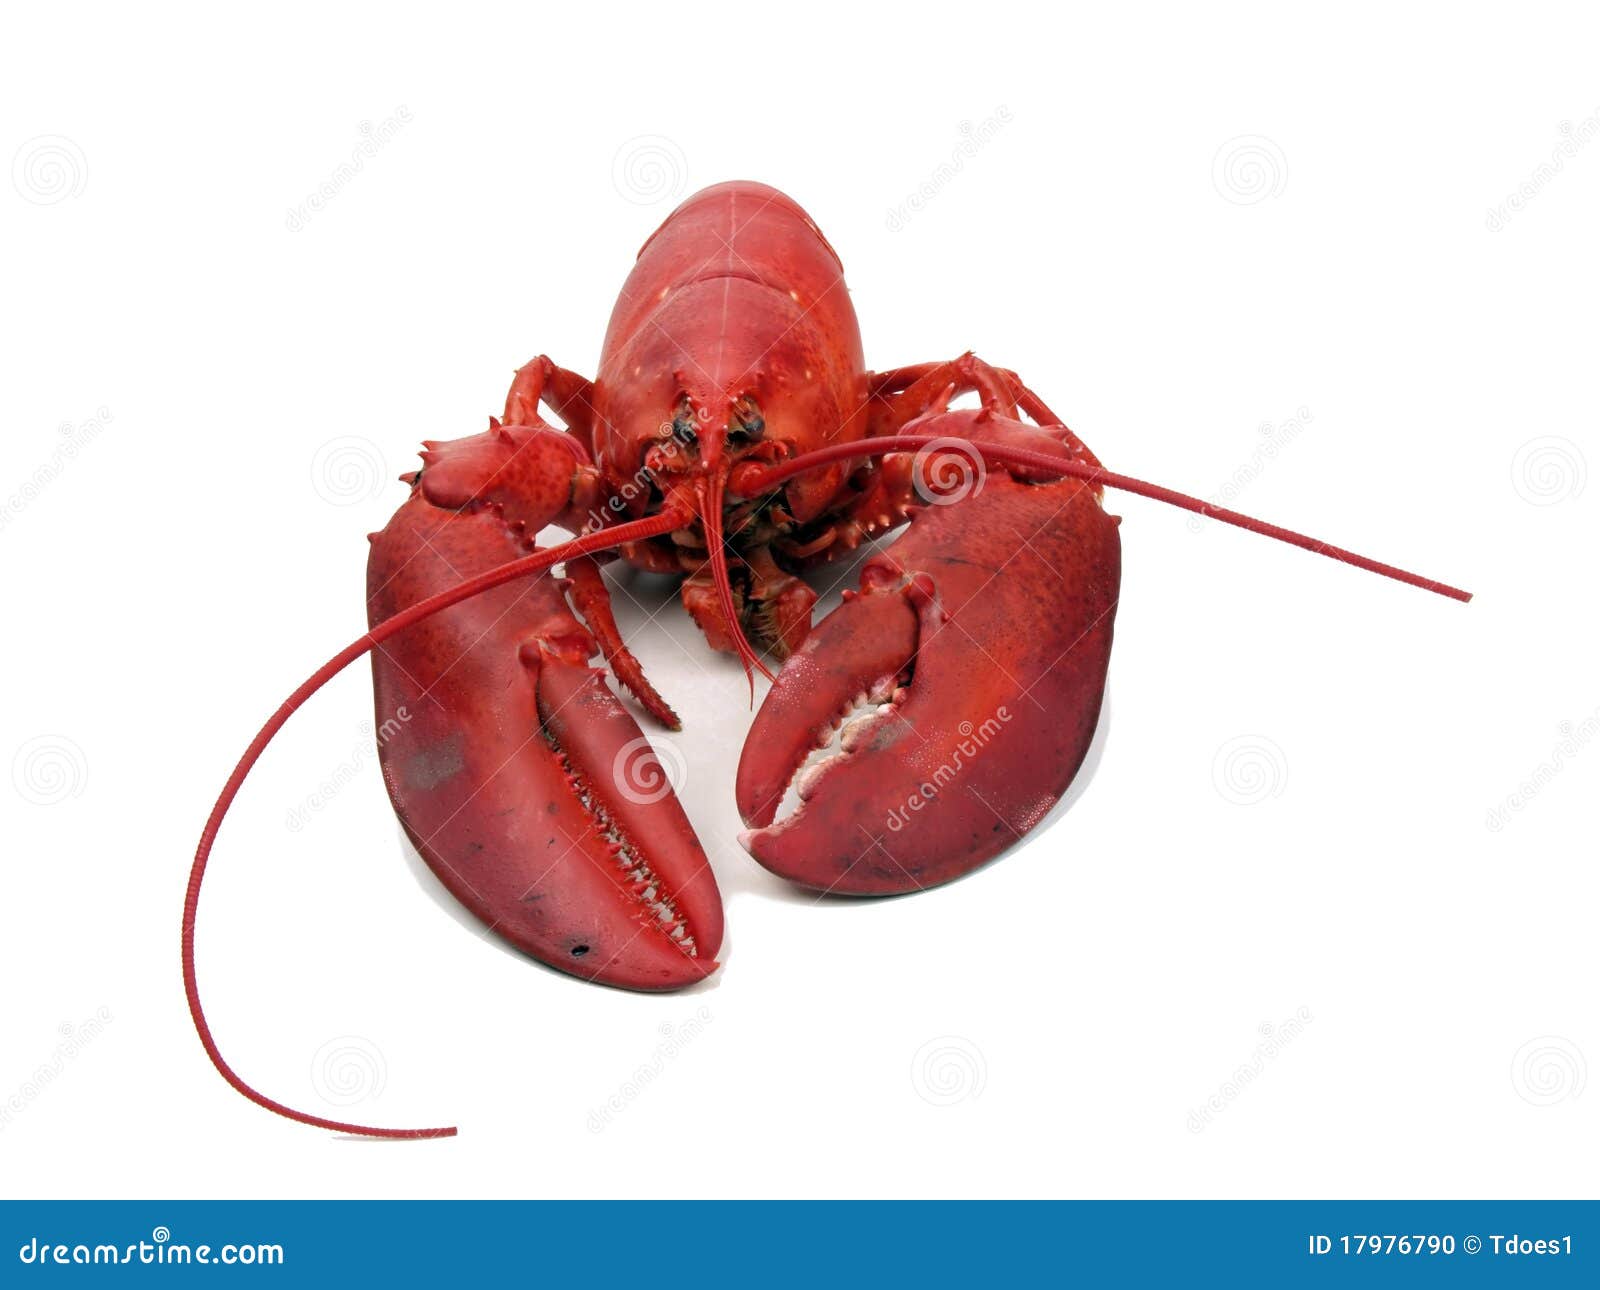 lobster - steamed